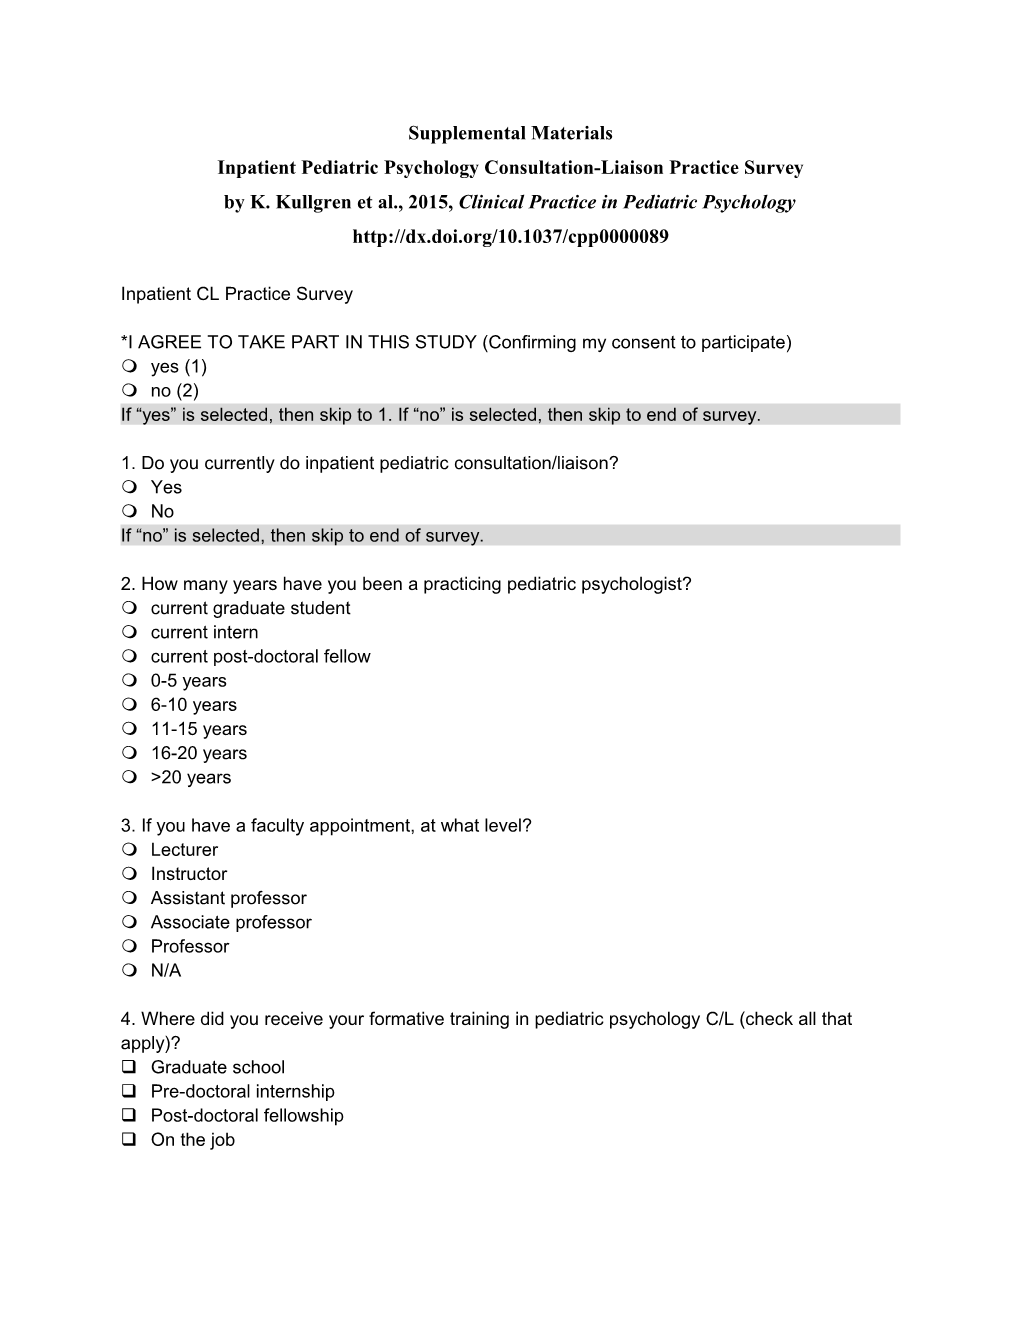 Inpatient Pediatric Psychology Consultation-Liaison Practice Survey